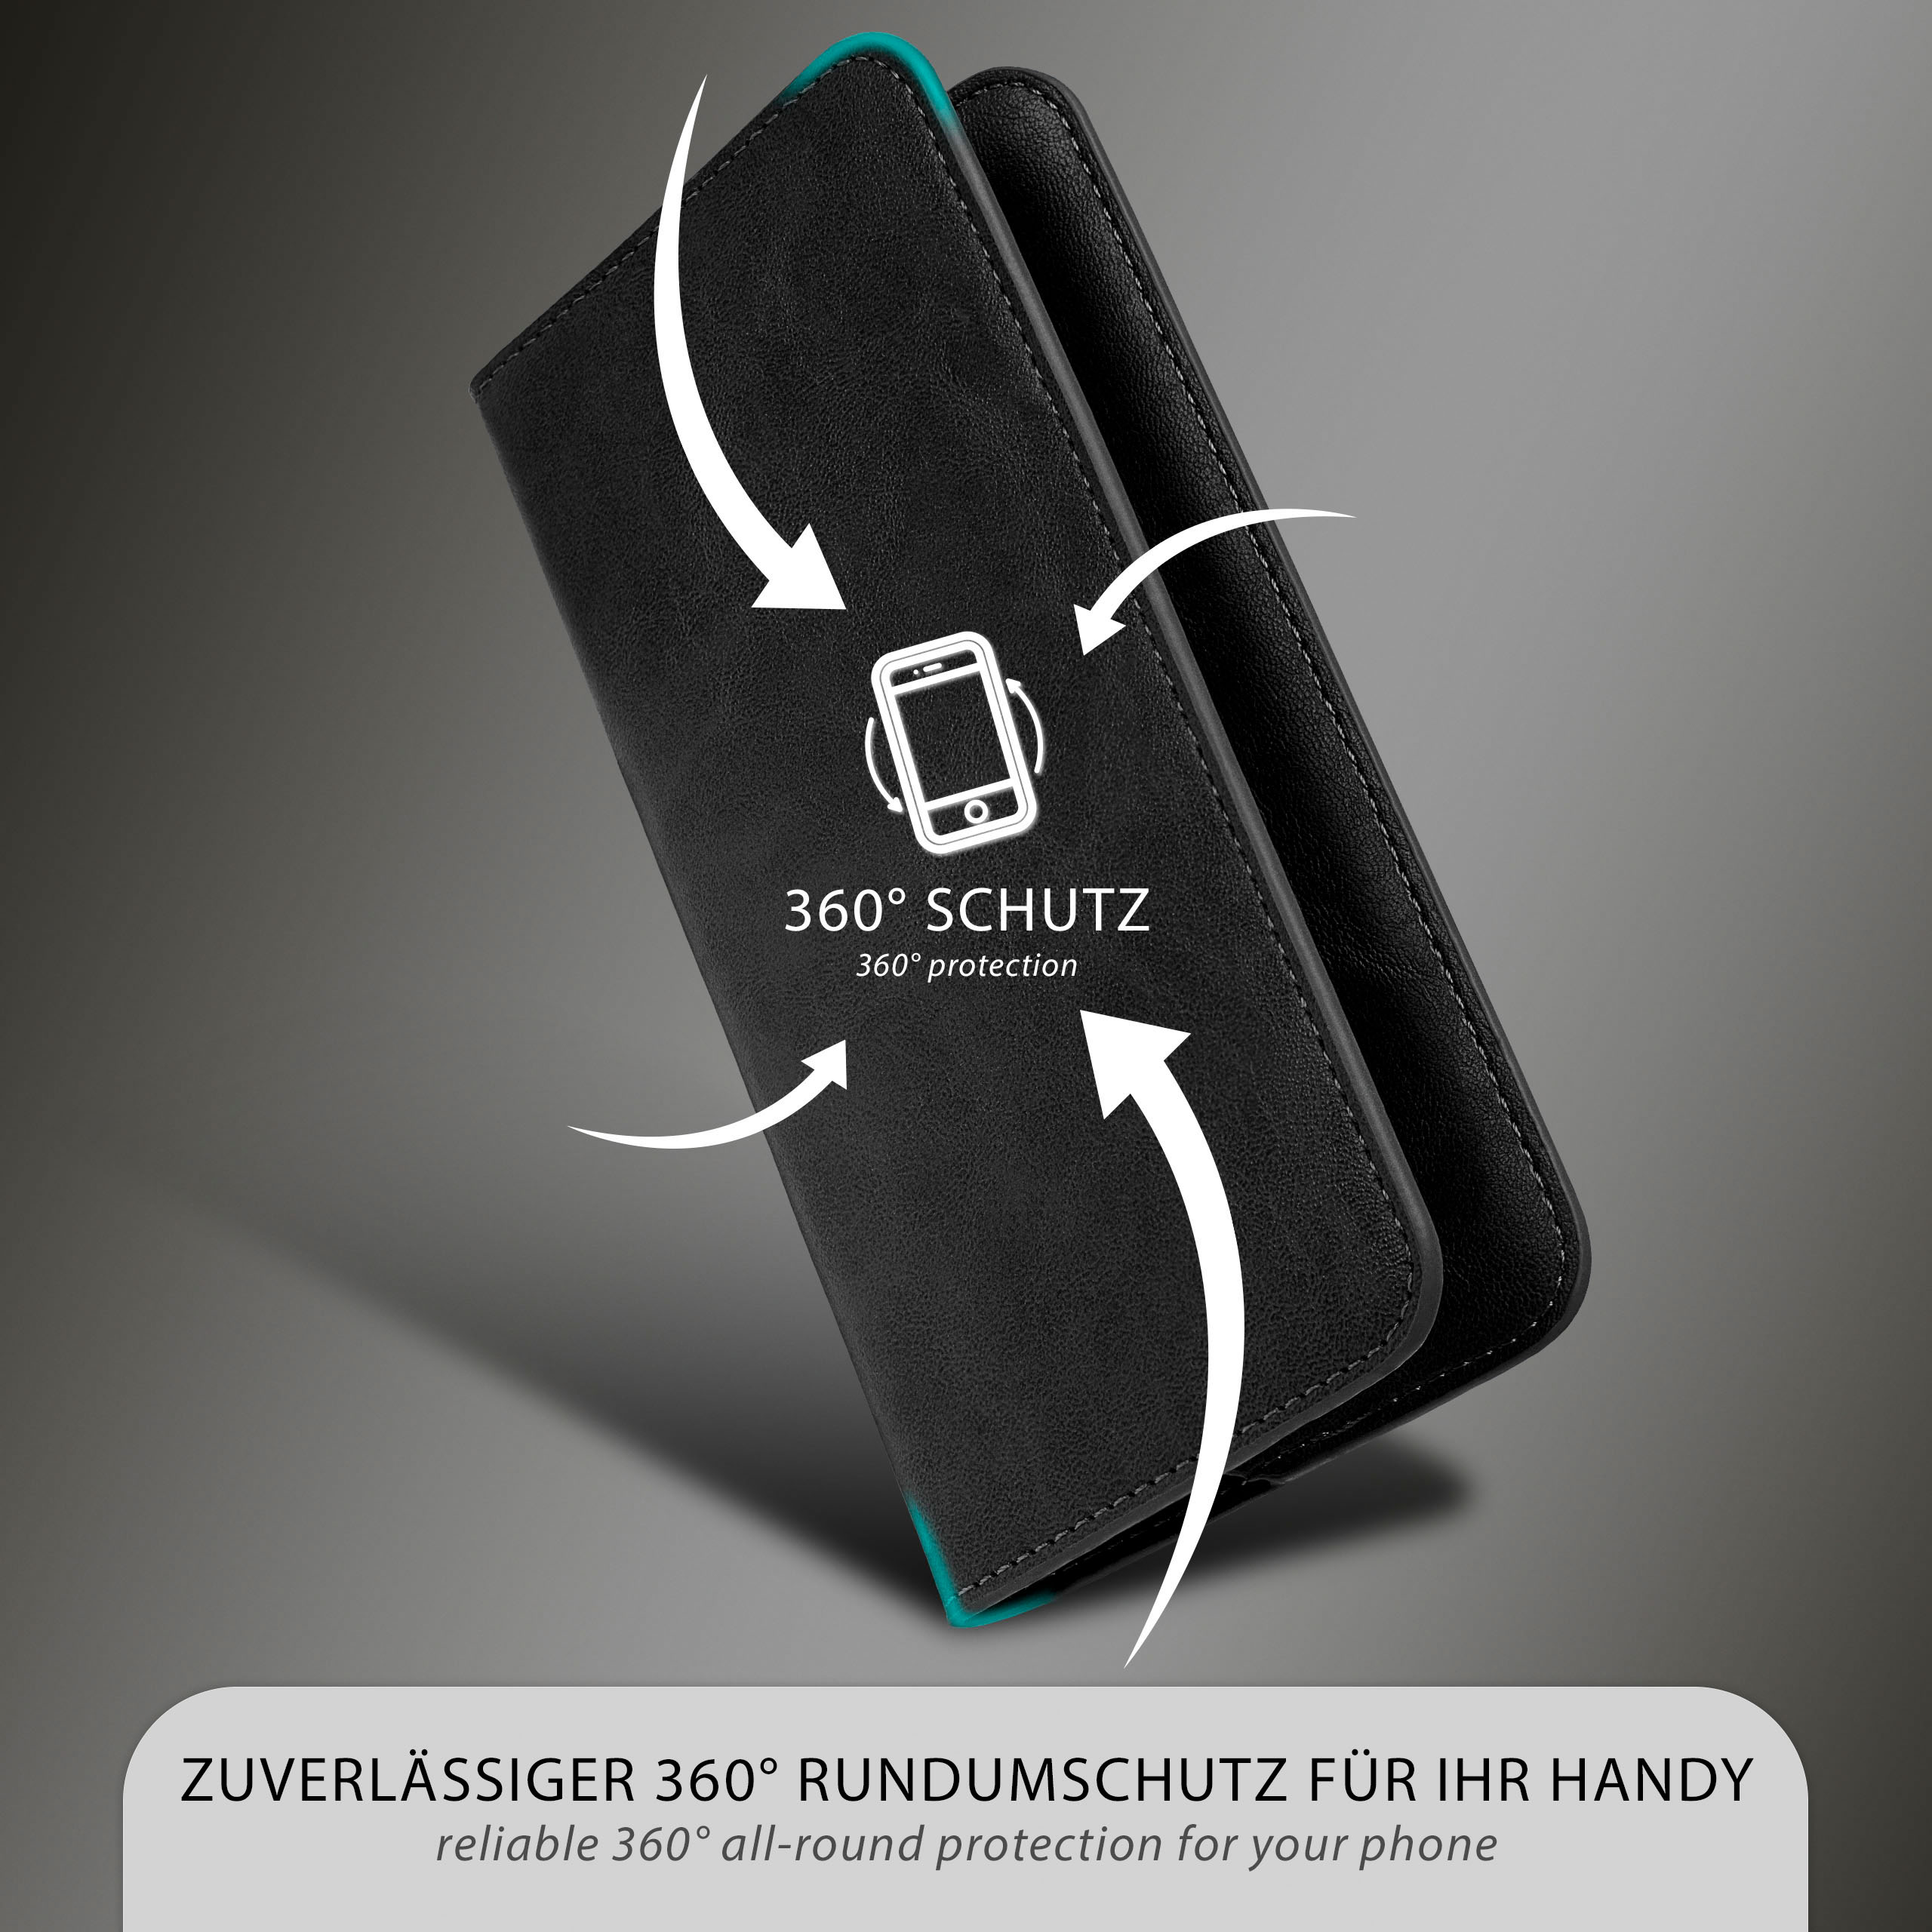 Cover, Flip Purse Case, 6T, MOEX OnePlus, Schwarz